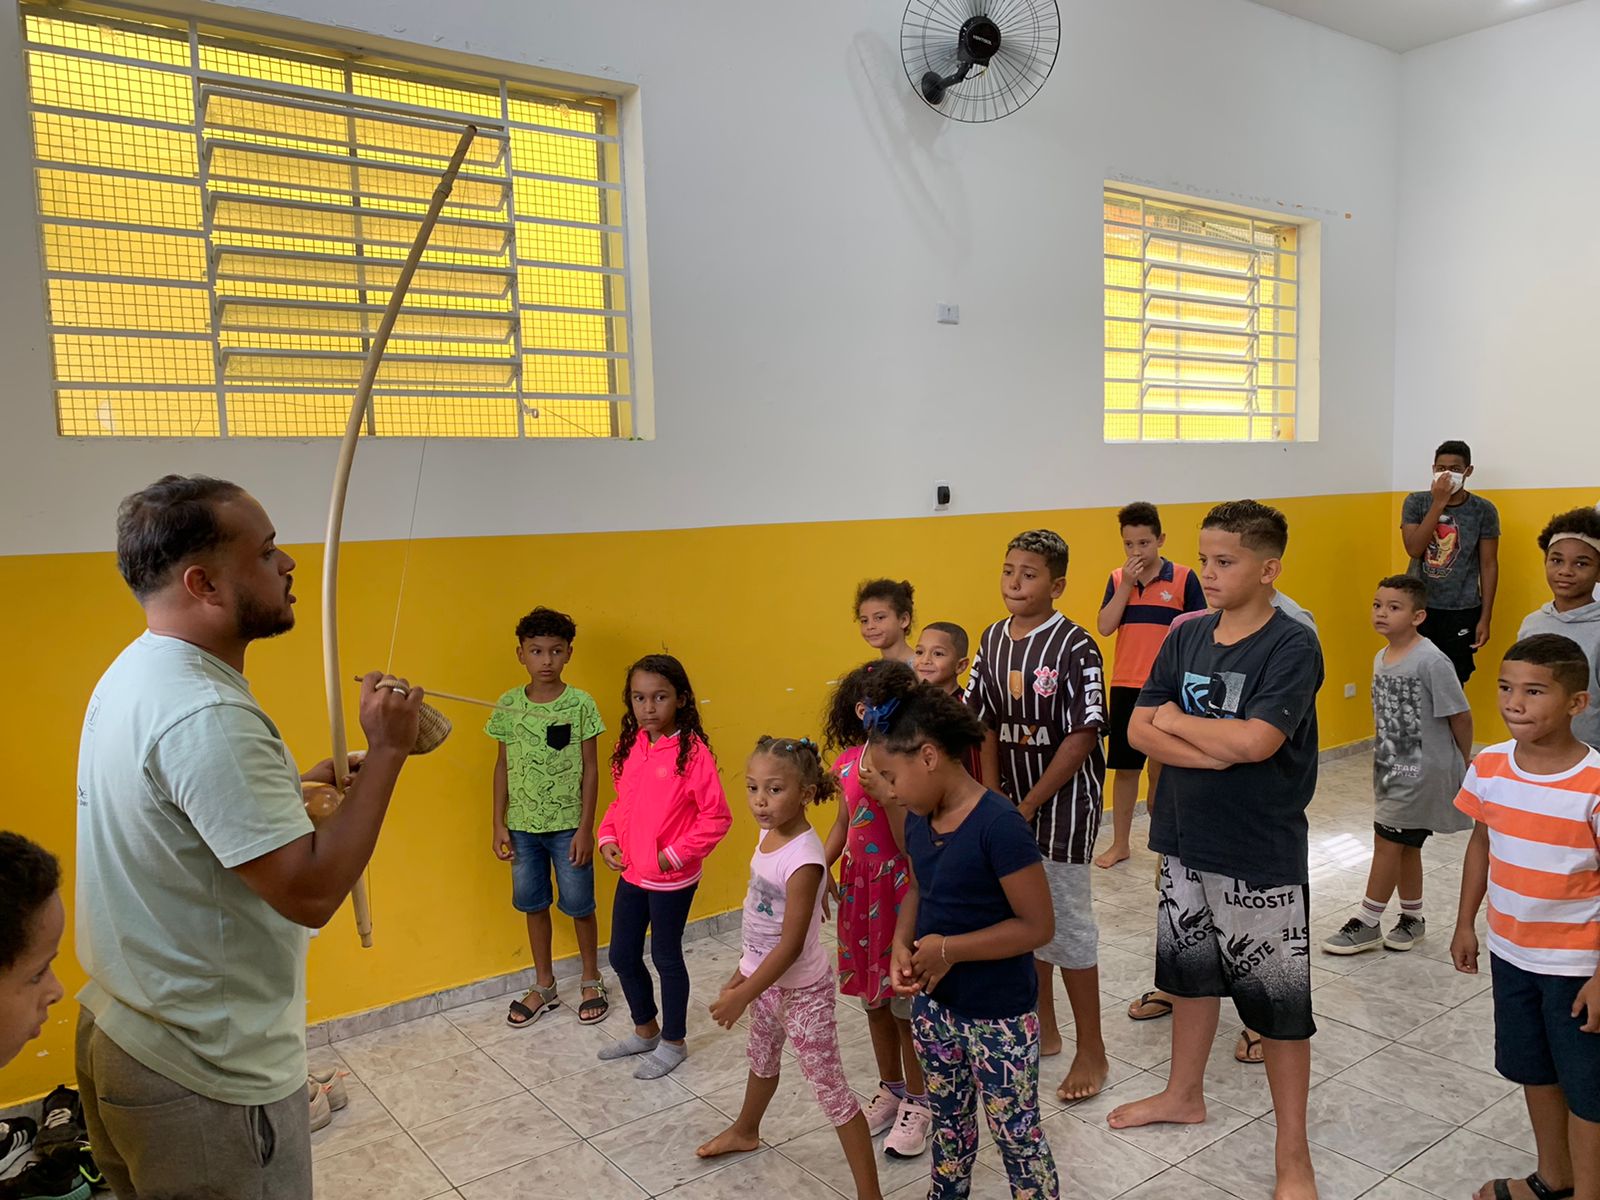 Na foto, algumas crianças estão organizadas uma ao lado da outra, em uma atividade sobre capoeira. Na frente delas, um homem segura um berimbau. Ao fundo tem duas janelas e um ventilador, em uma parede branda a amarela.